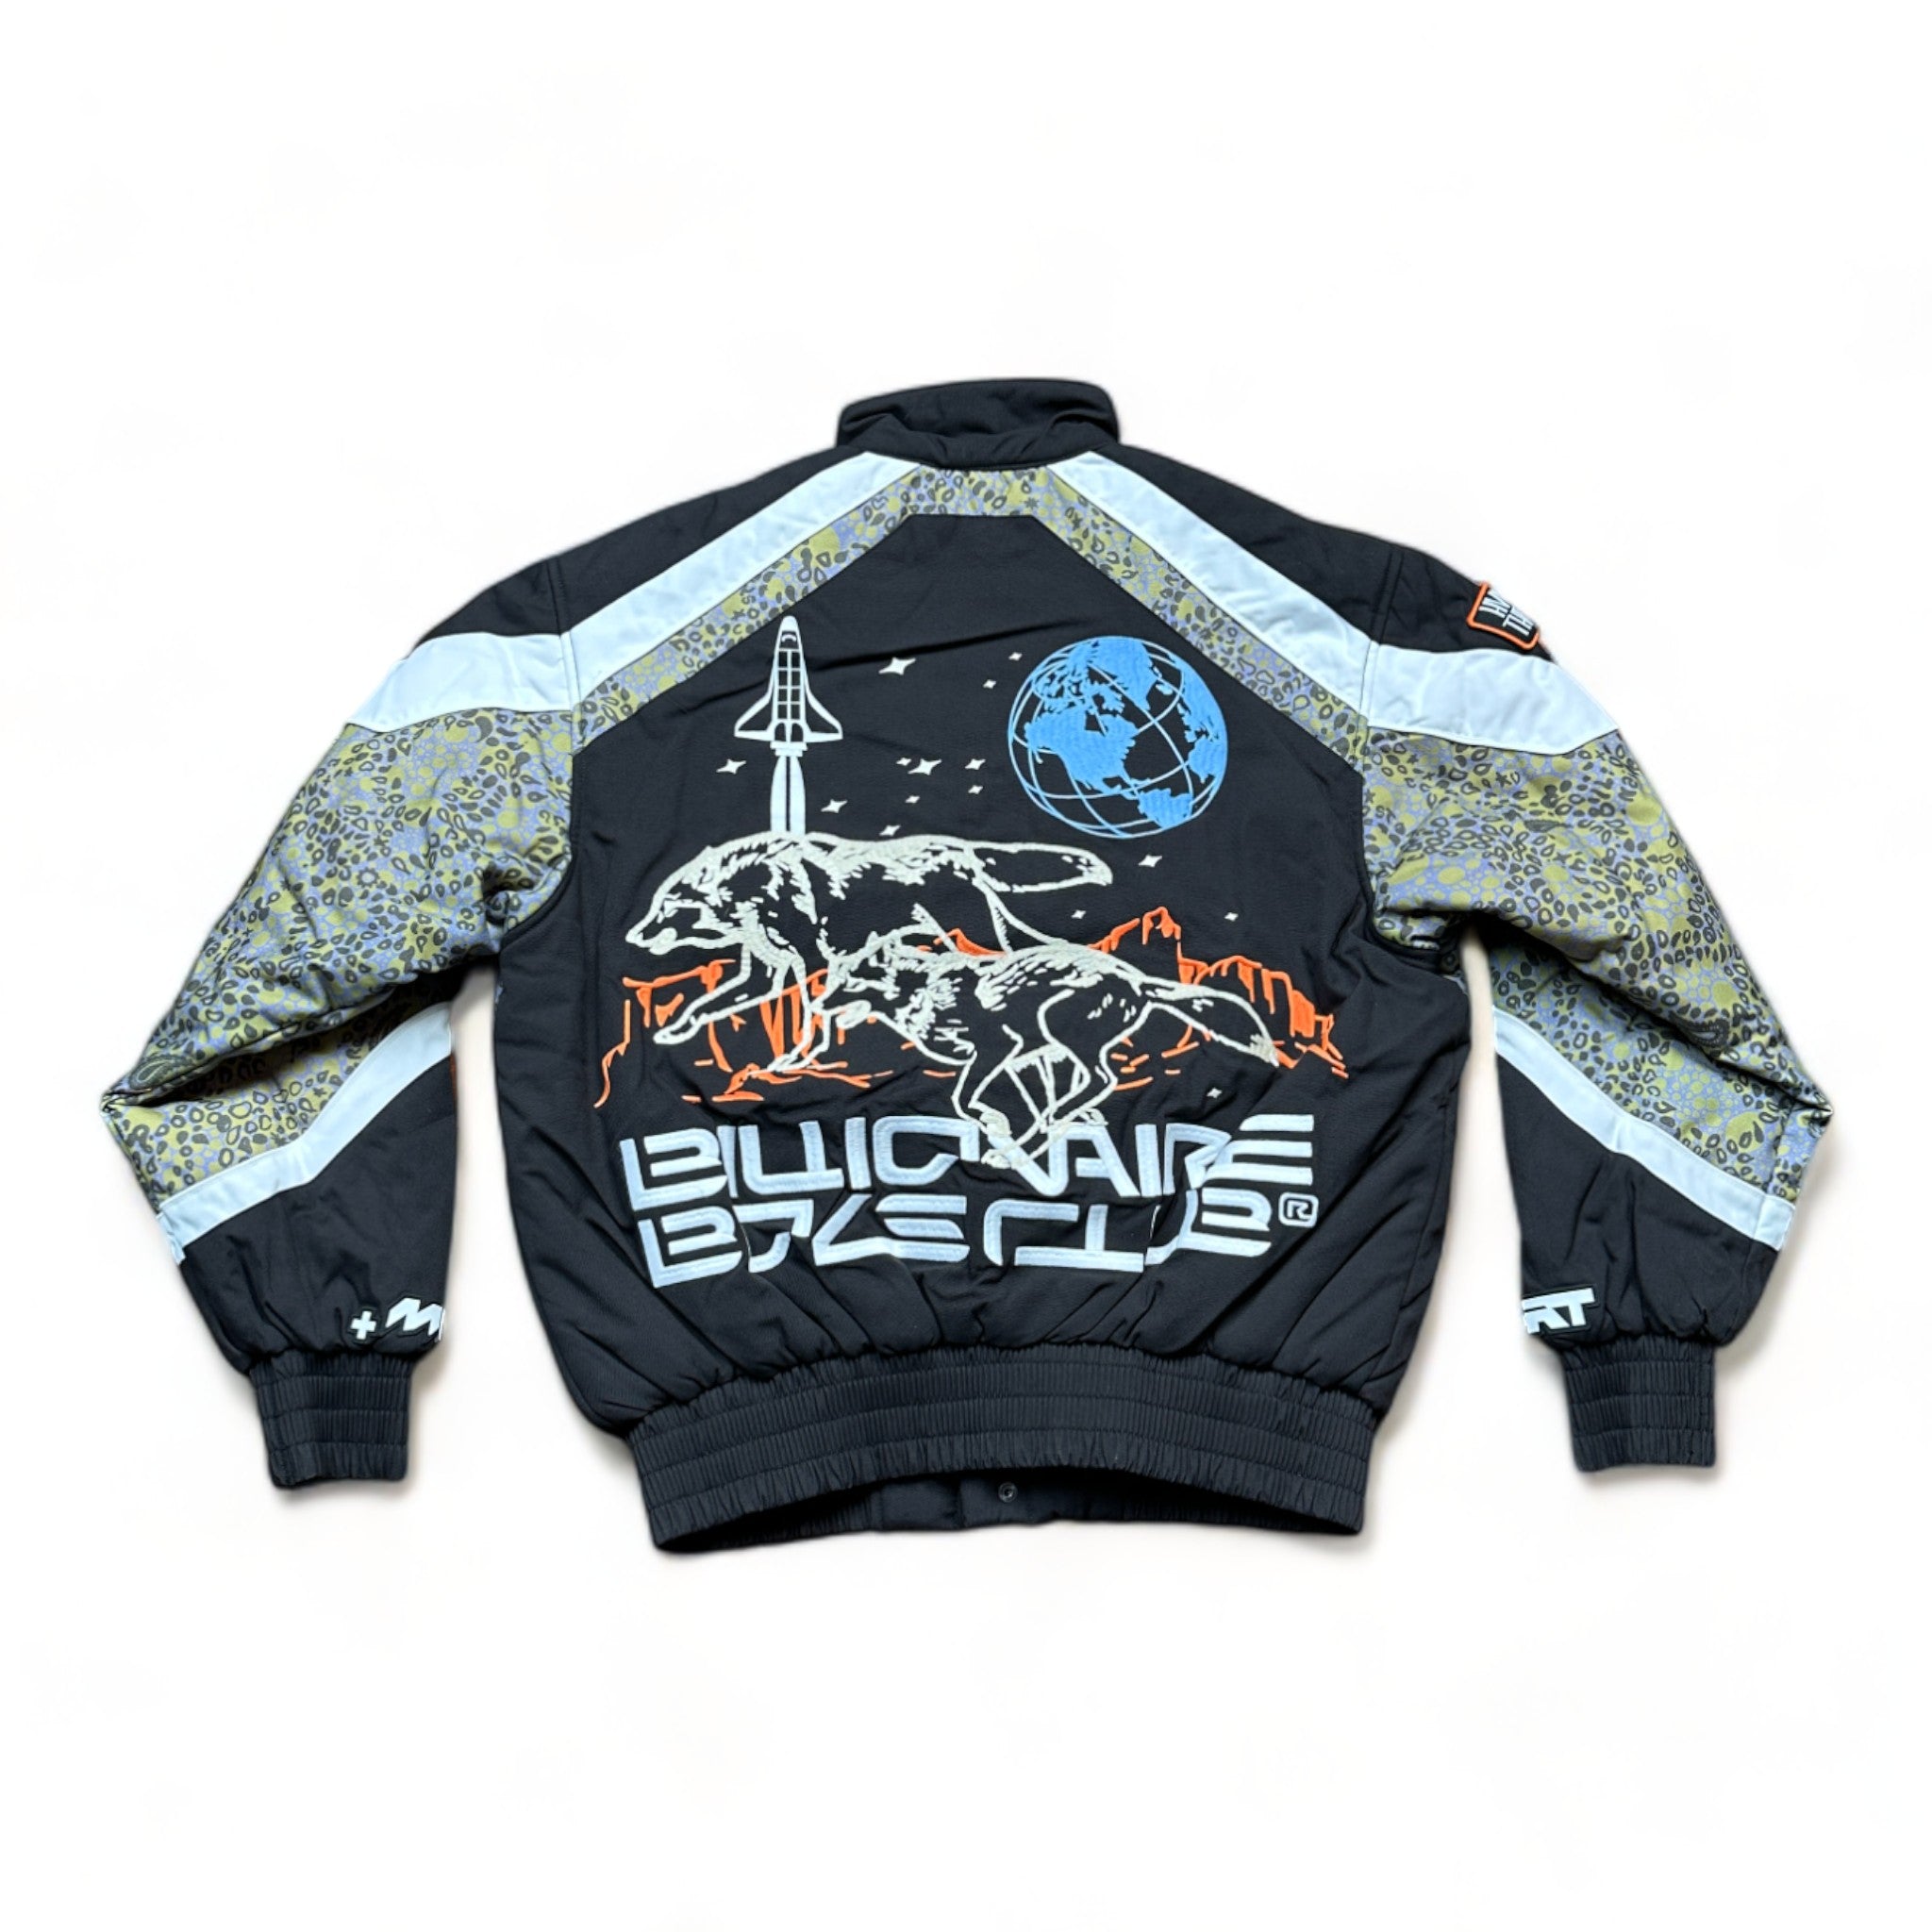 Billionaire Boys Club BB Space Suit Jacket (Oversized Fit) Black